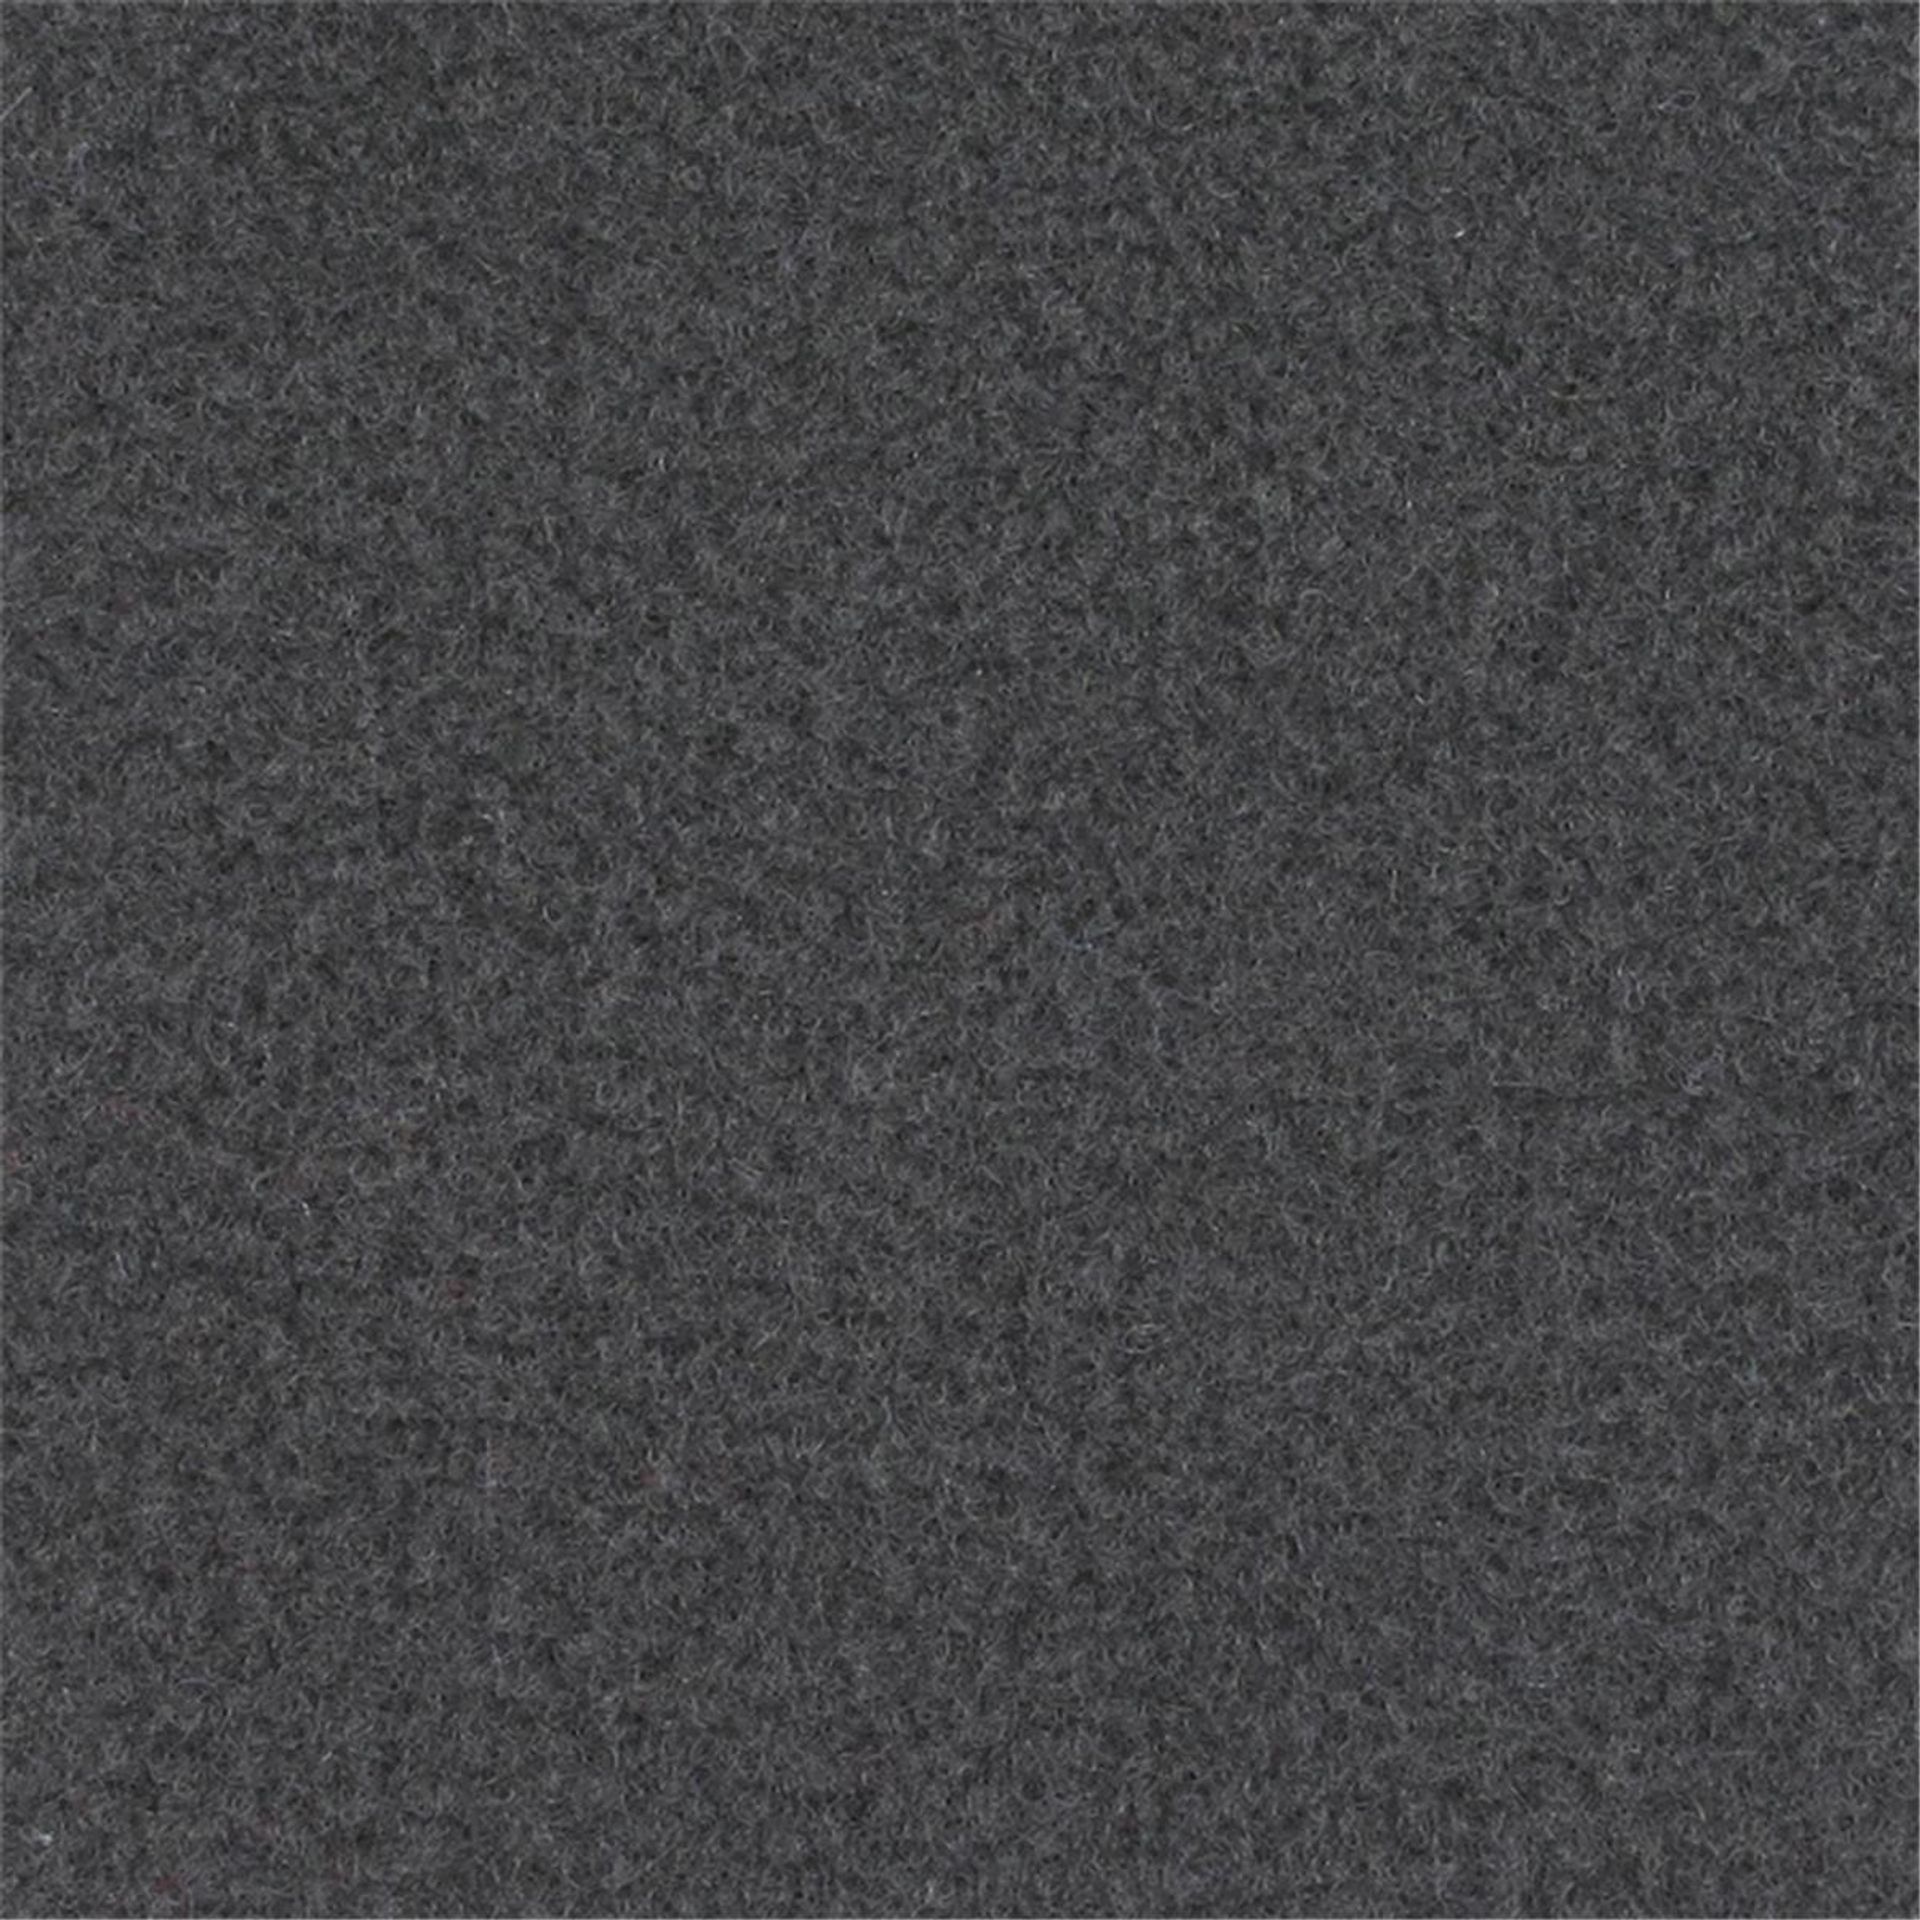 Messeboden Velours EXPOLUXE Dark Grey 9515 mit Schutzfolie  - Rollenbreite 200 cm